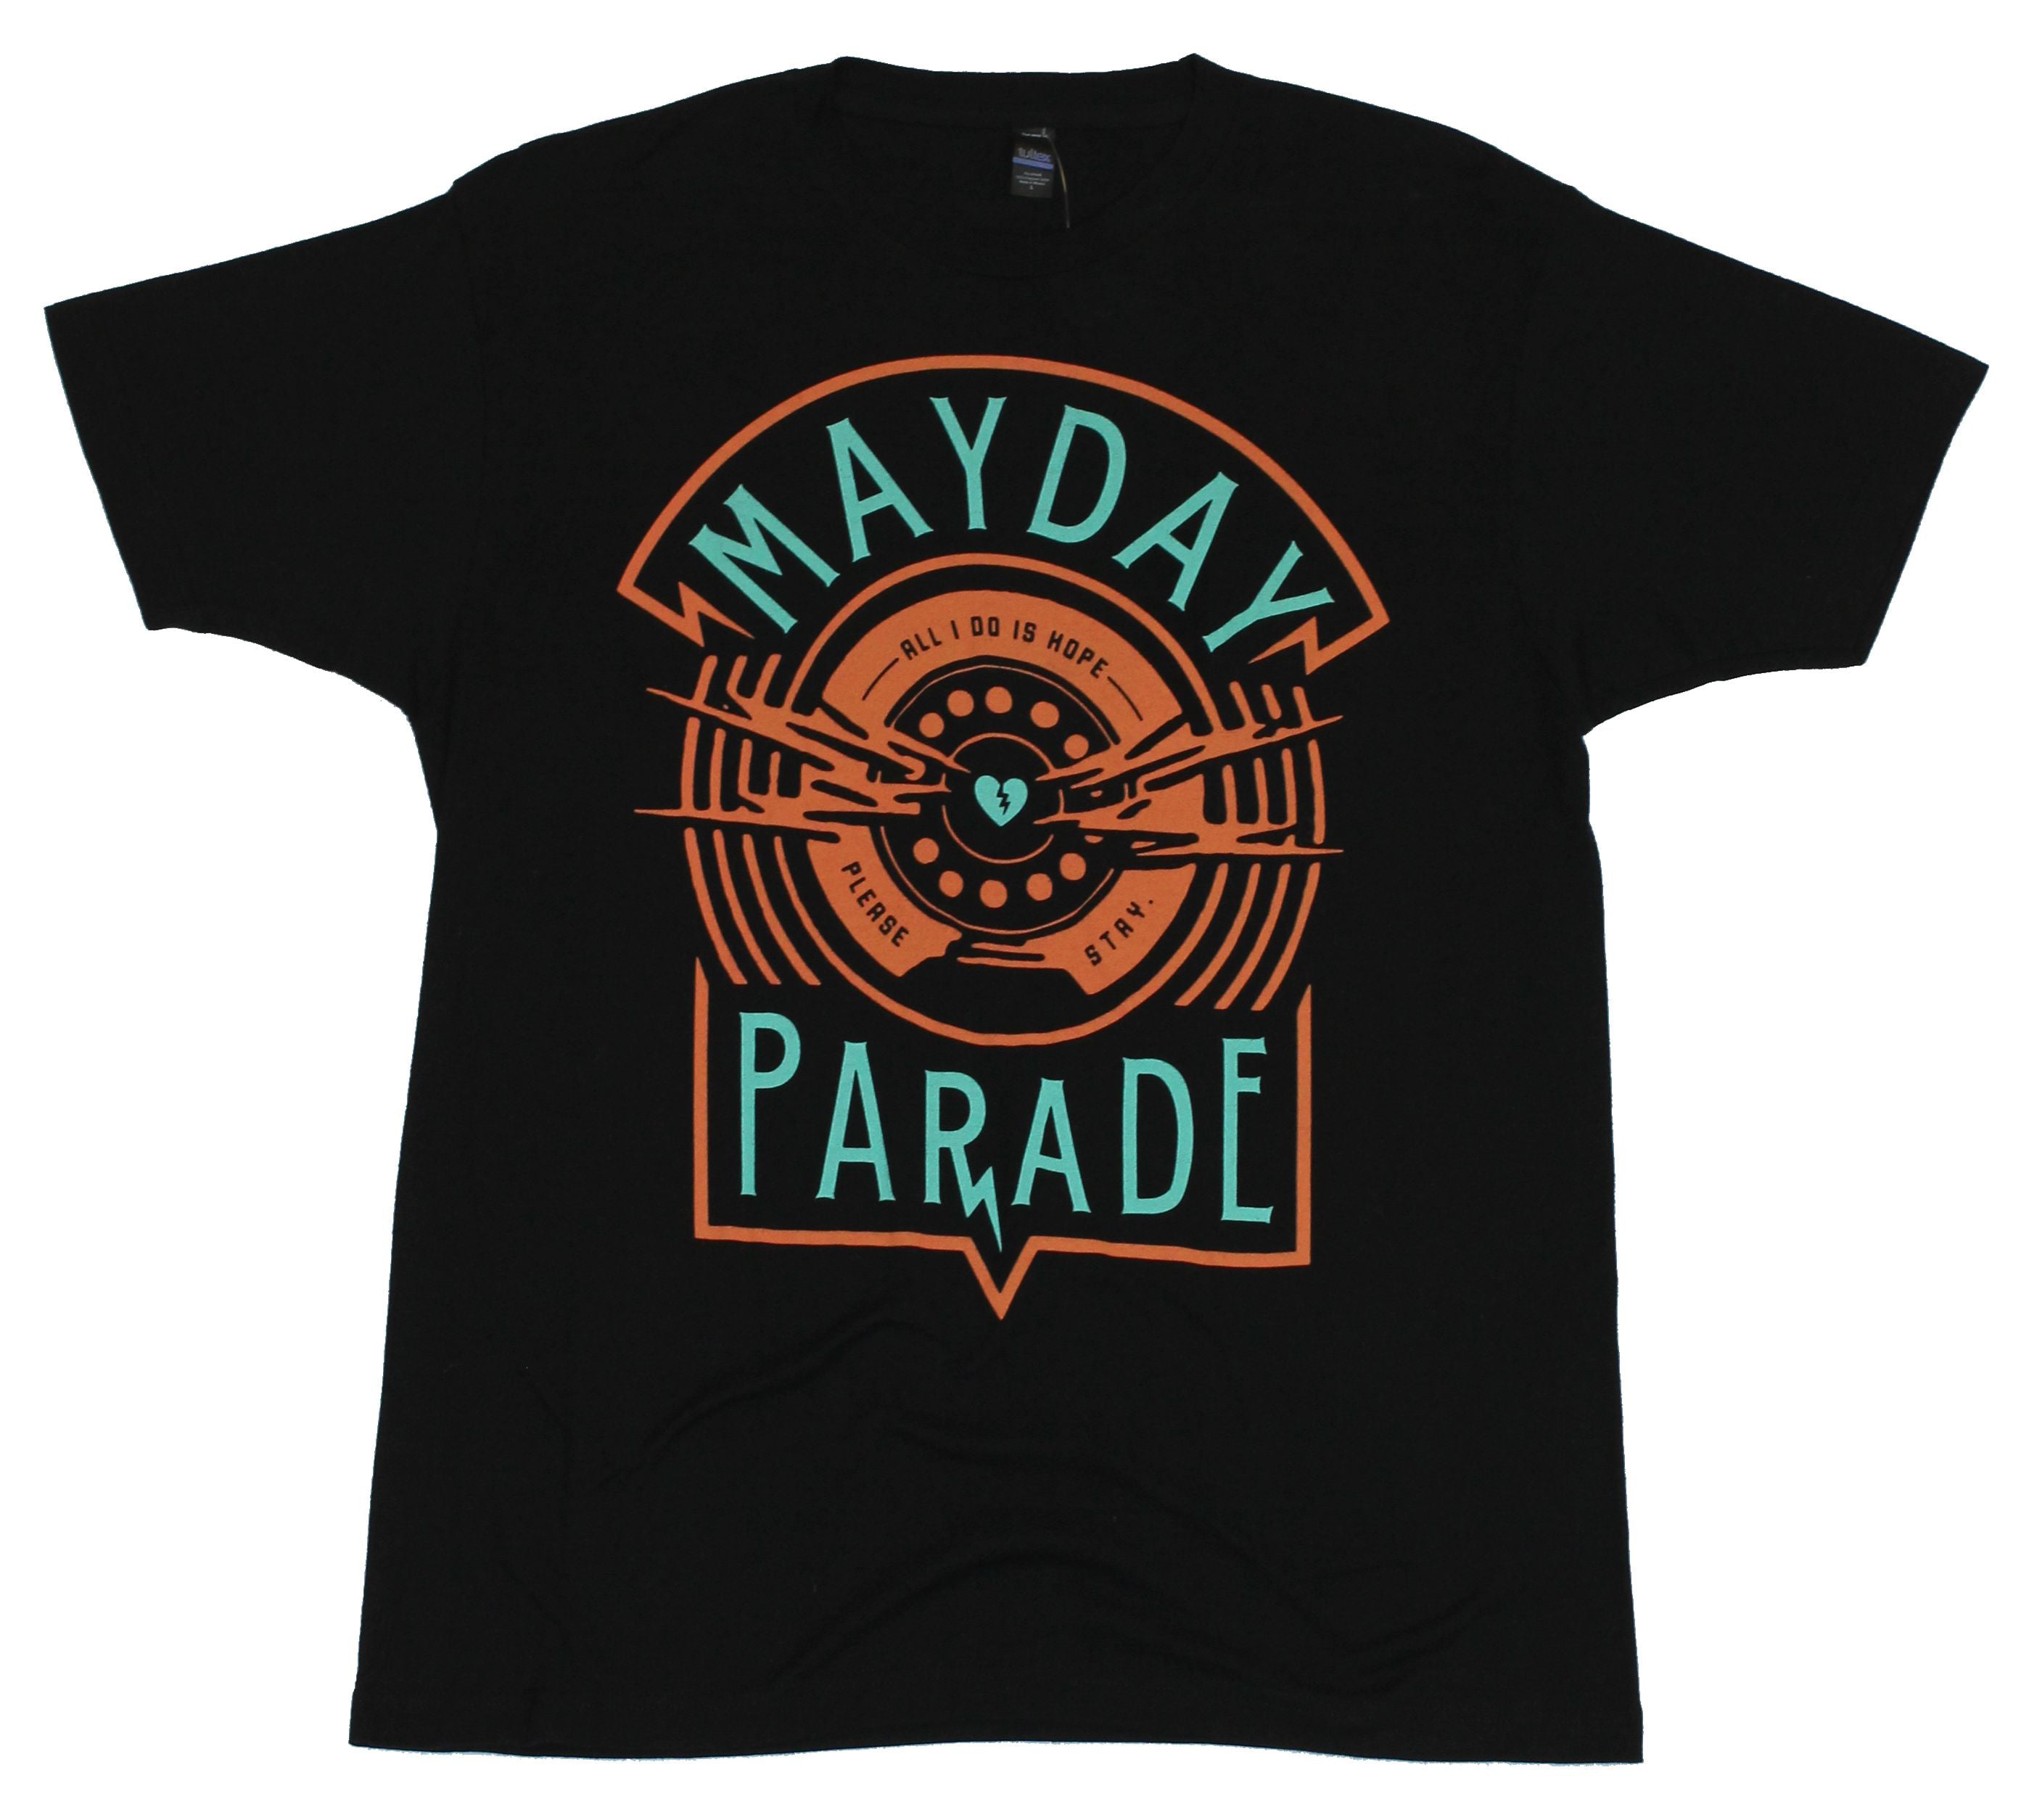 mayday parade shirt